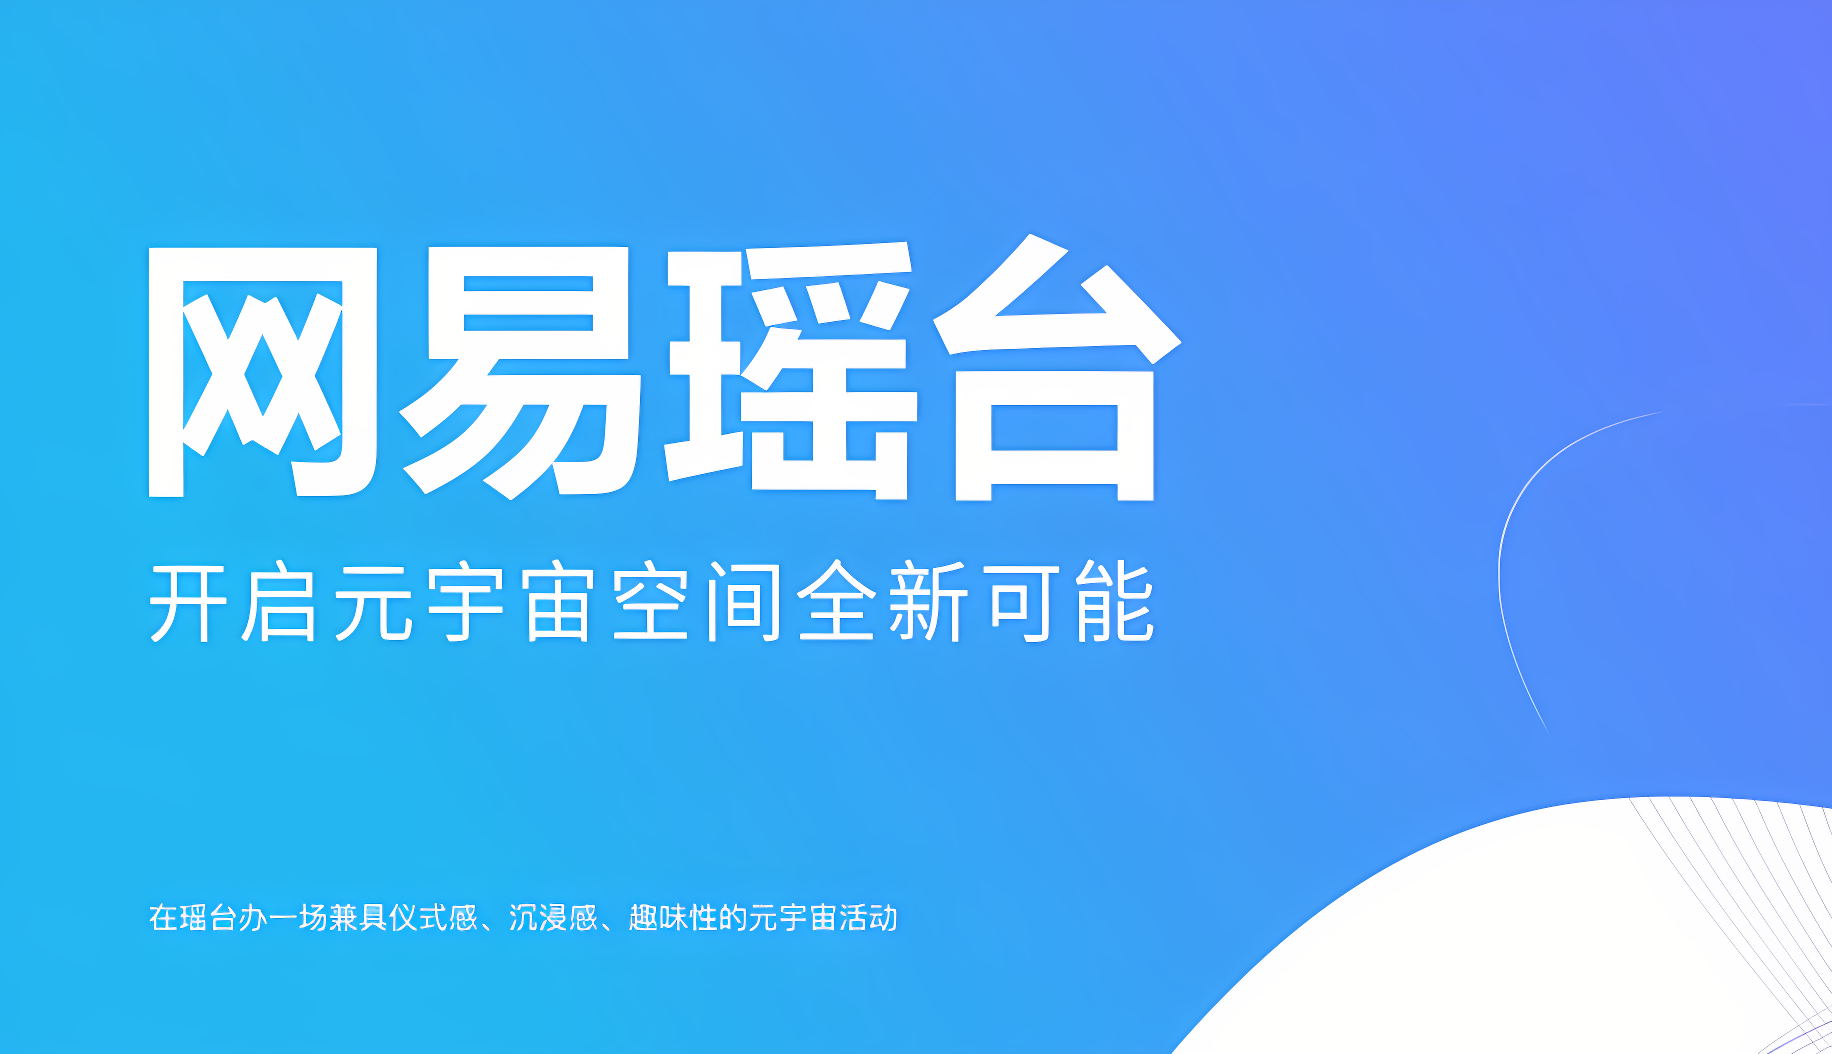 图片展示了蓝色背景上的白色中文文字，写着“周末会员 新用户专属立减新福利”，旁边有简洁的装饰图案。